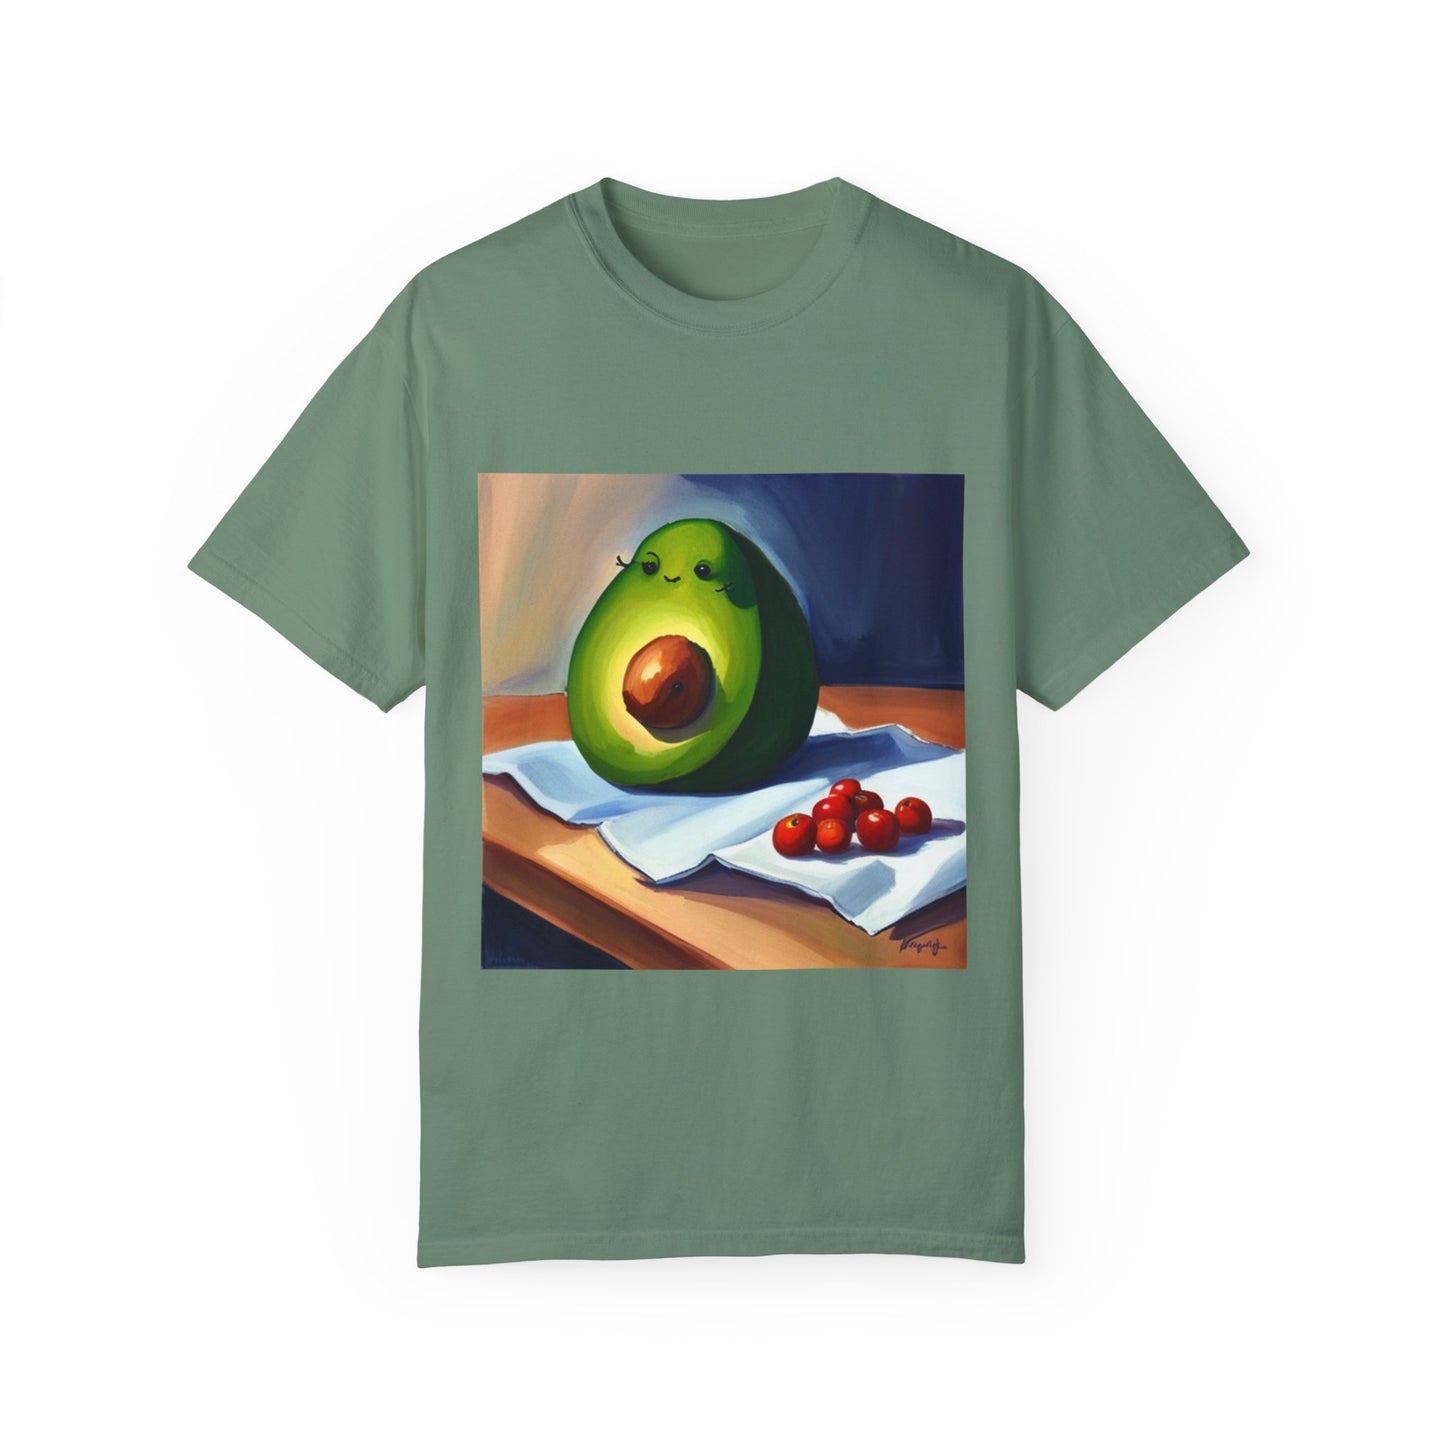 Unisex Garment-Dyed T-shirt Light Green